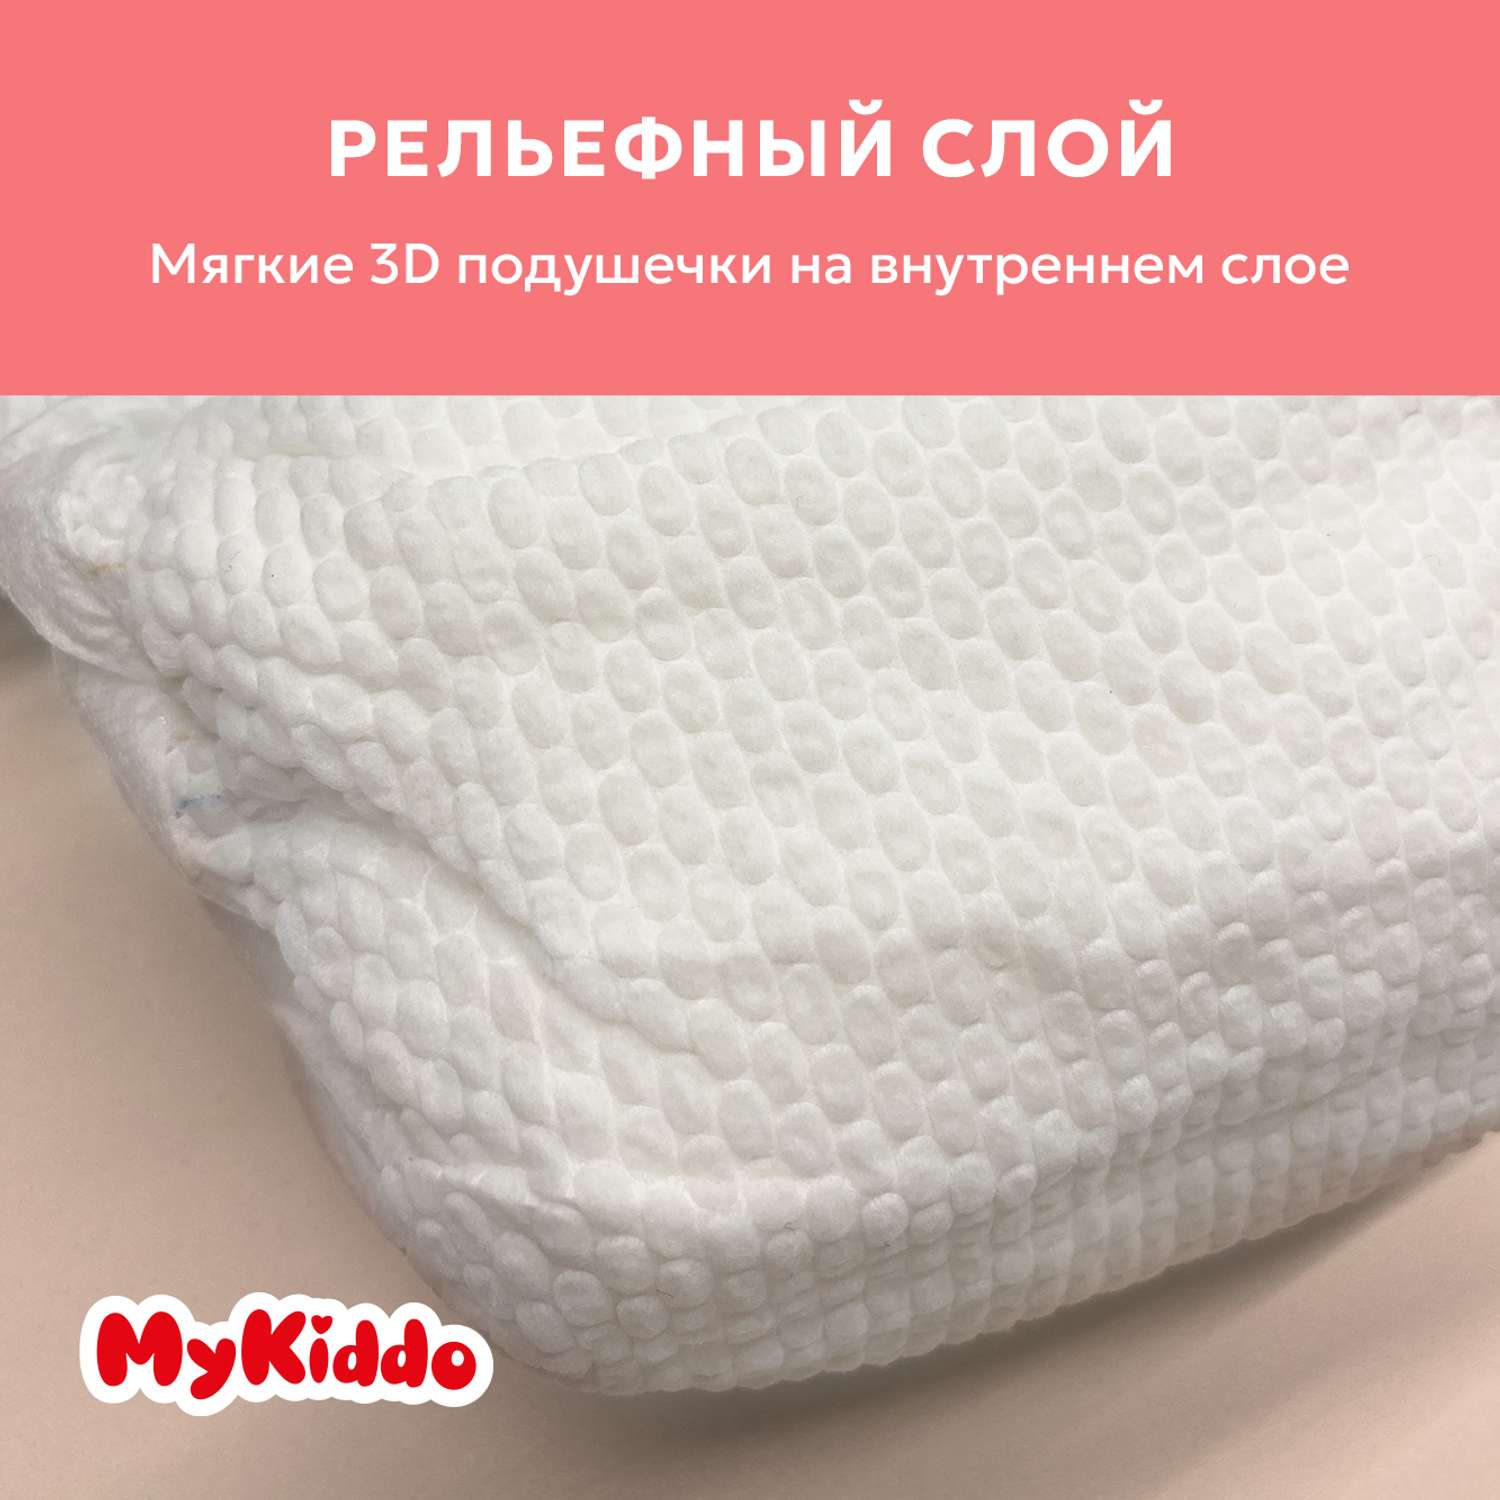 Подгузники MyKiddo Premium для новорожденных 0-6 кг размер S 3уп по 24 шт - фото 6